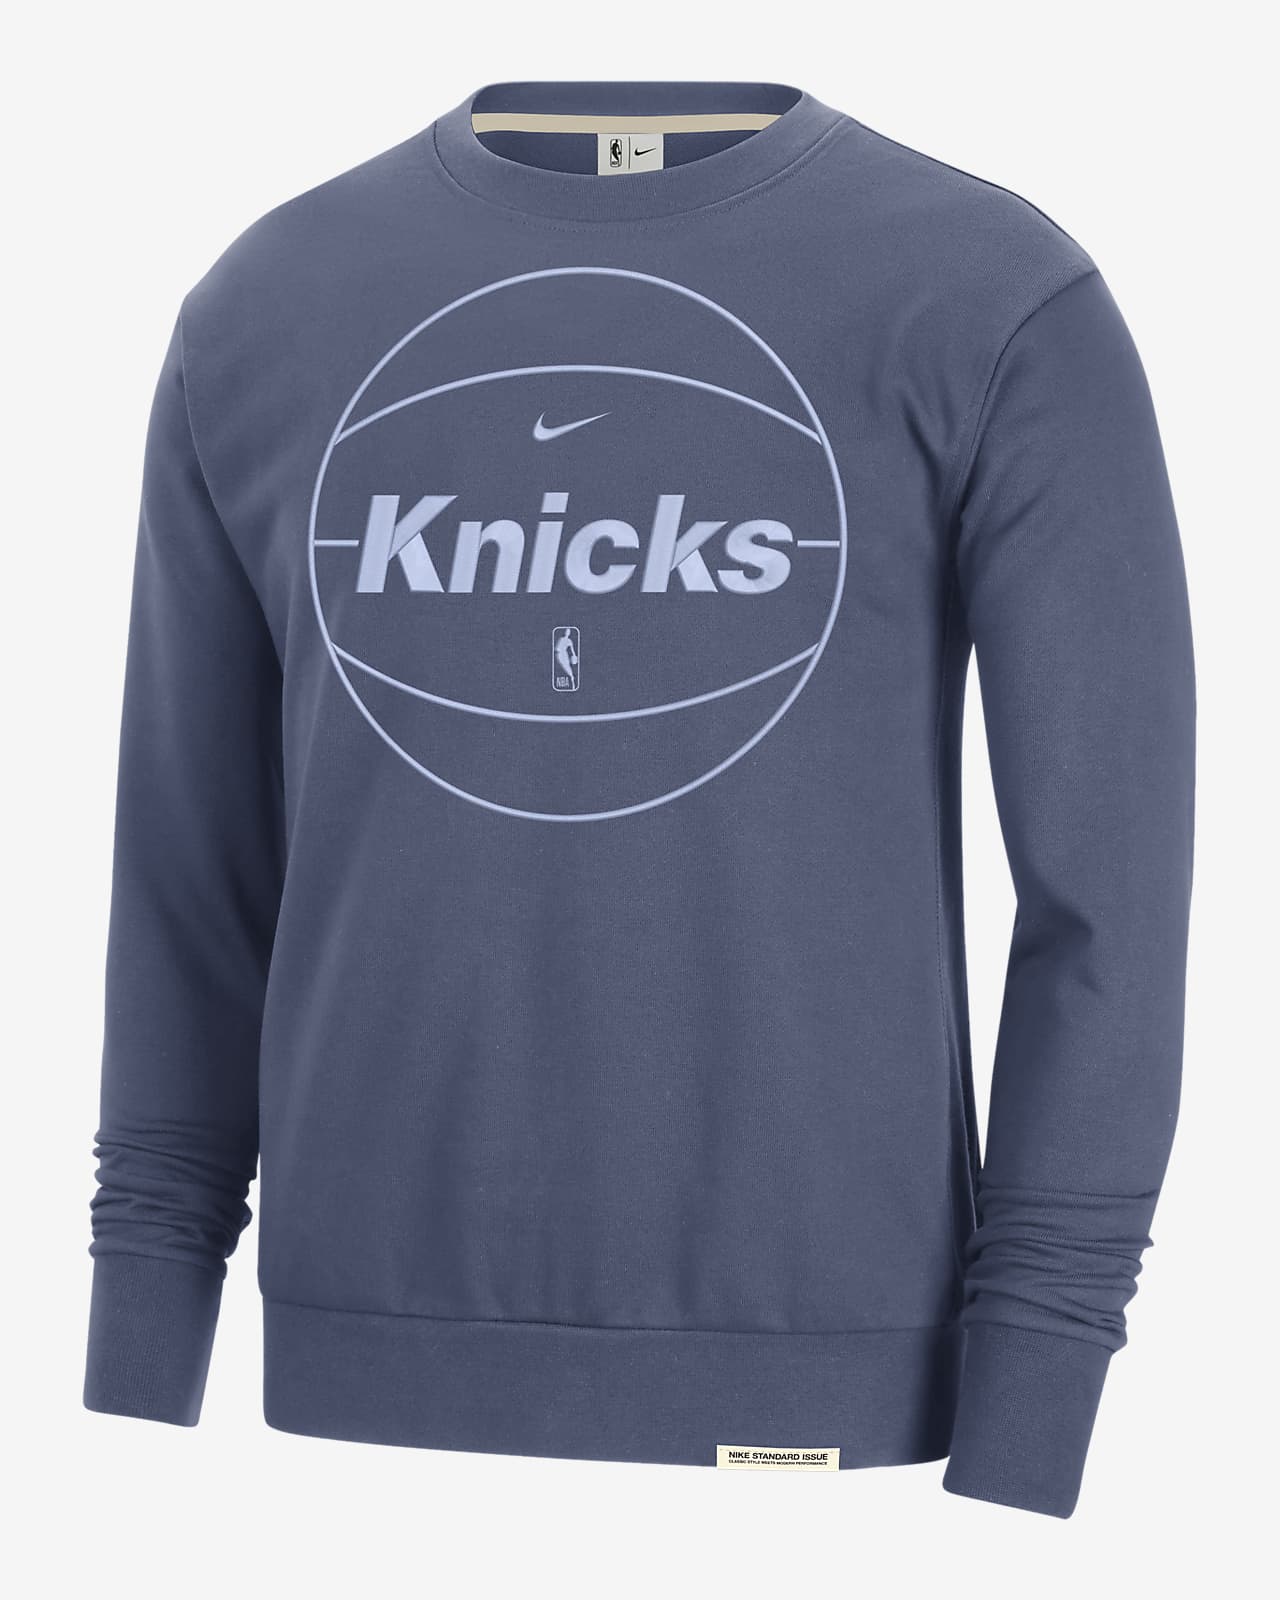 New York Knicks Standard Issue Men's Nike Dri-FIT NBA Sweatshirt